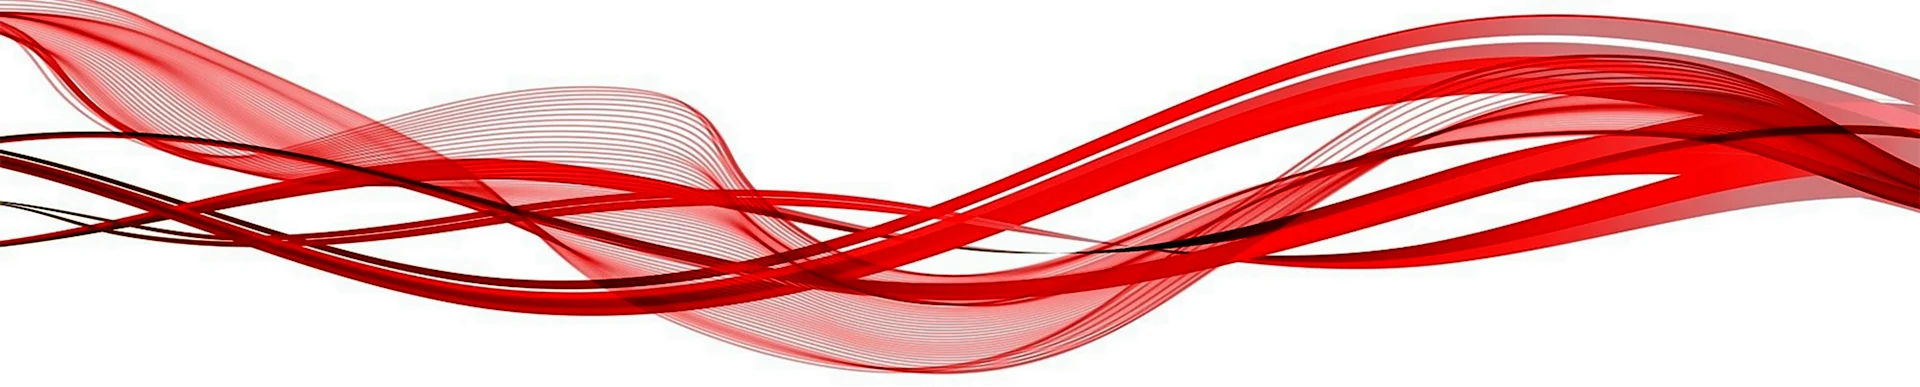 Красная волнистая линия